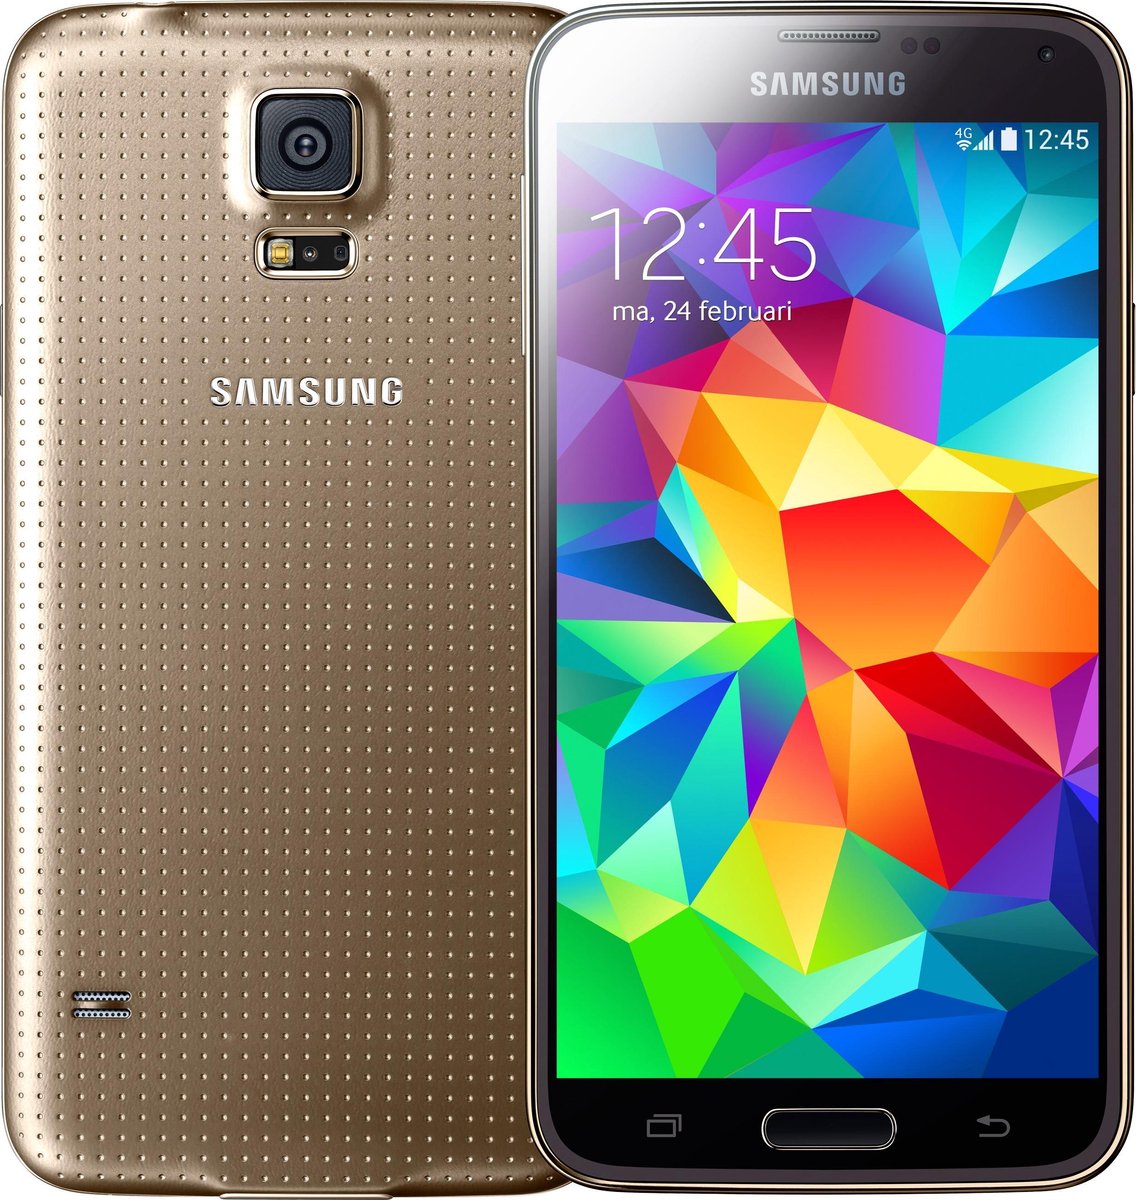 Strikt Blootstellen erectie Samsung Galaxy S5 - 16GB - Goud | bol.com